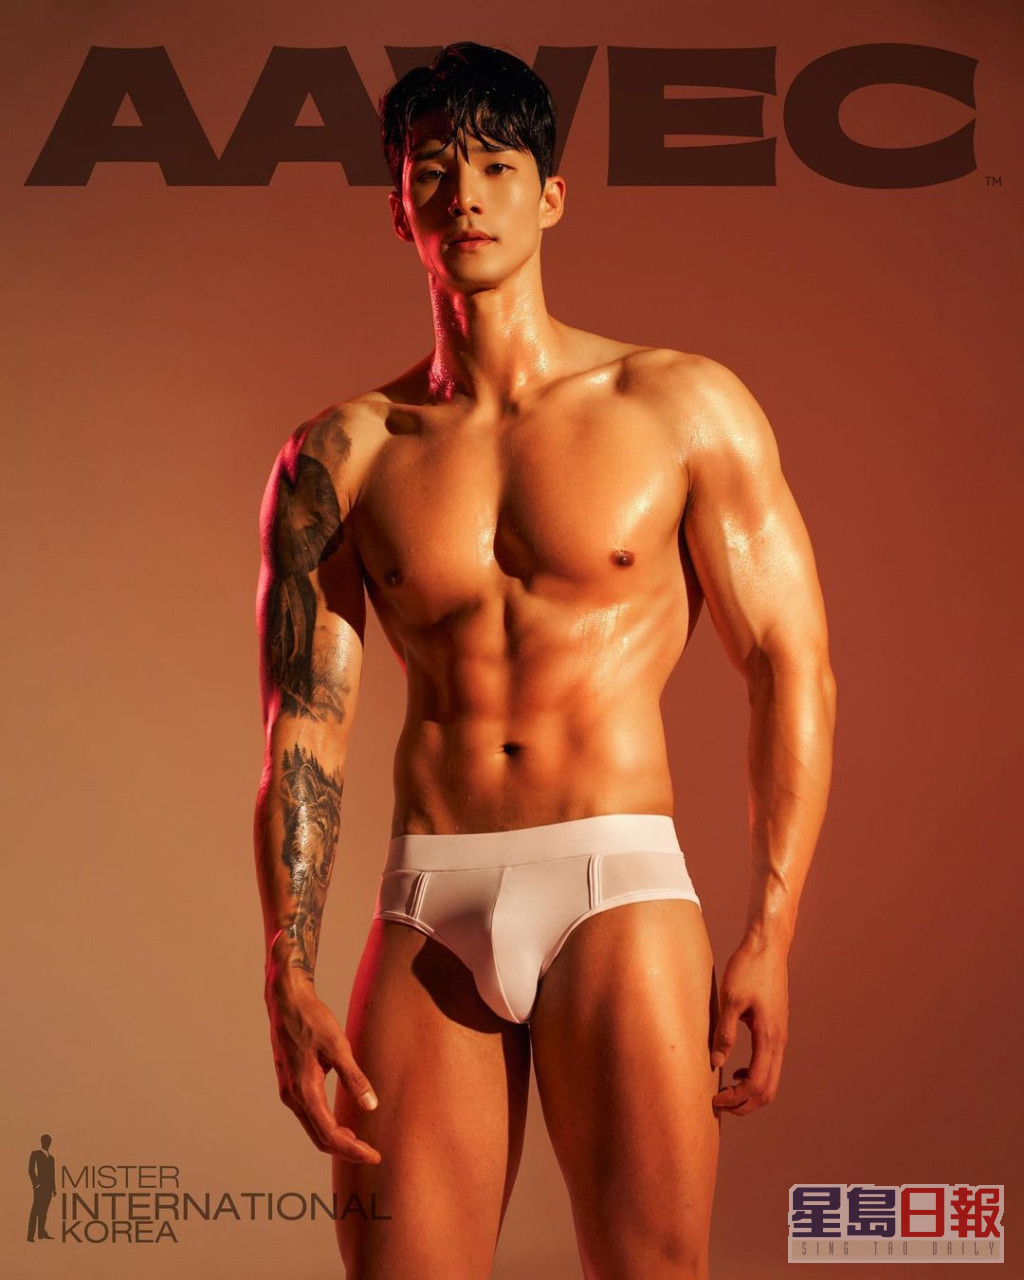 20号 김태범 (Kim tae beom)  年龄：33  身高：185cm  体重：82kg  职业：跆拳道选手、发型师